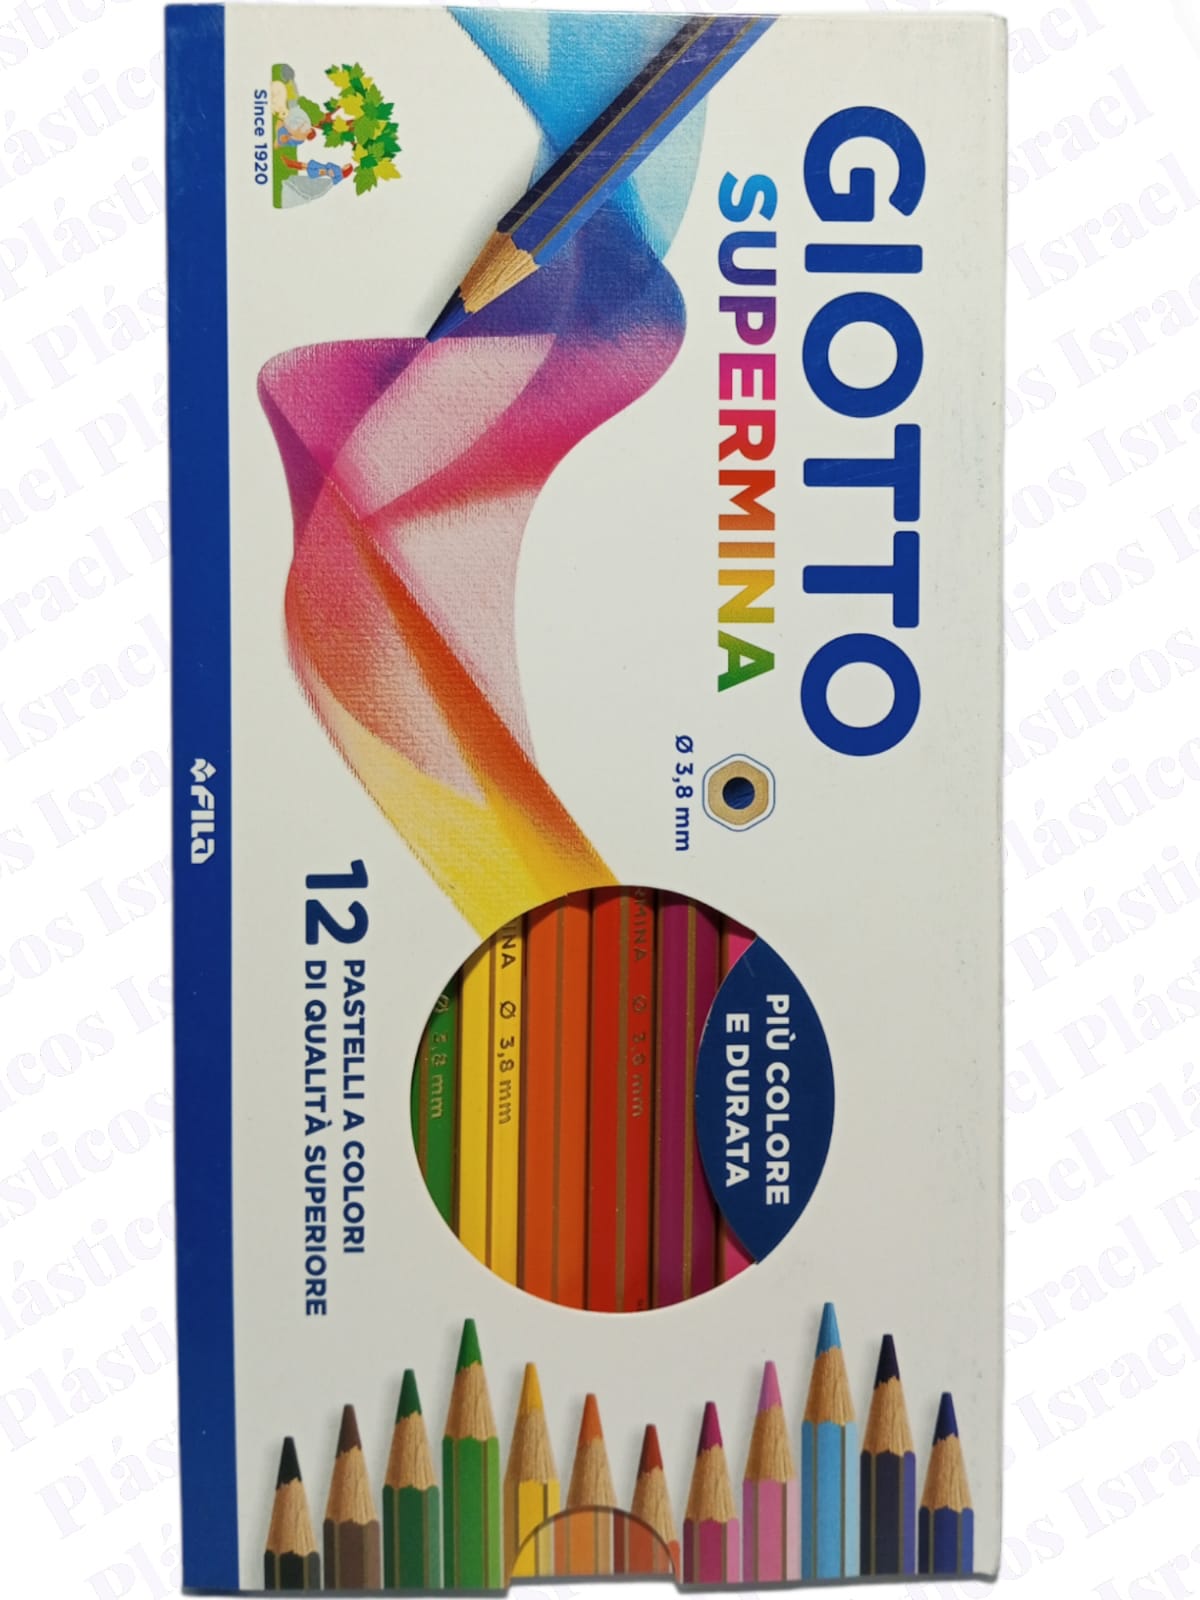 GIOTTO Giotto Supermina 36 Colores Estuche metalico